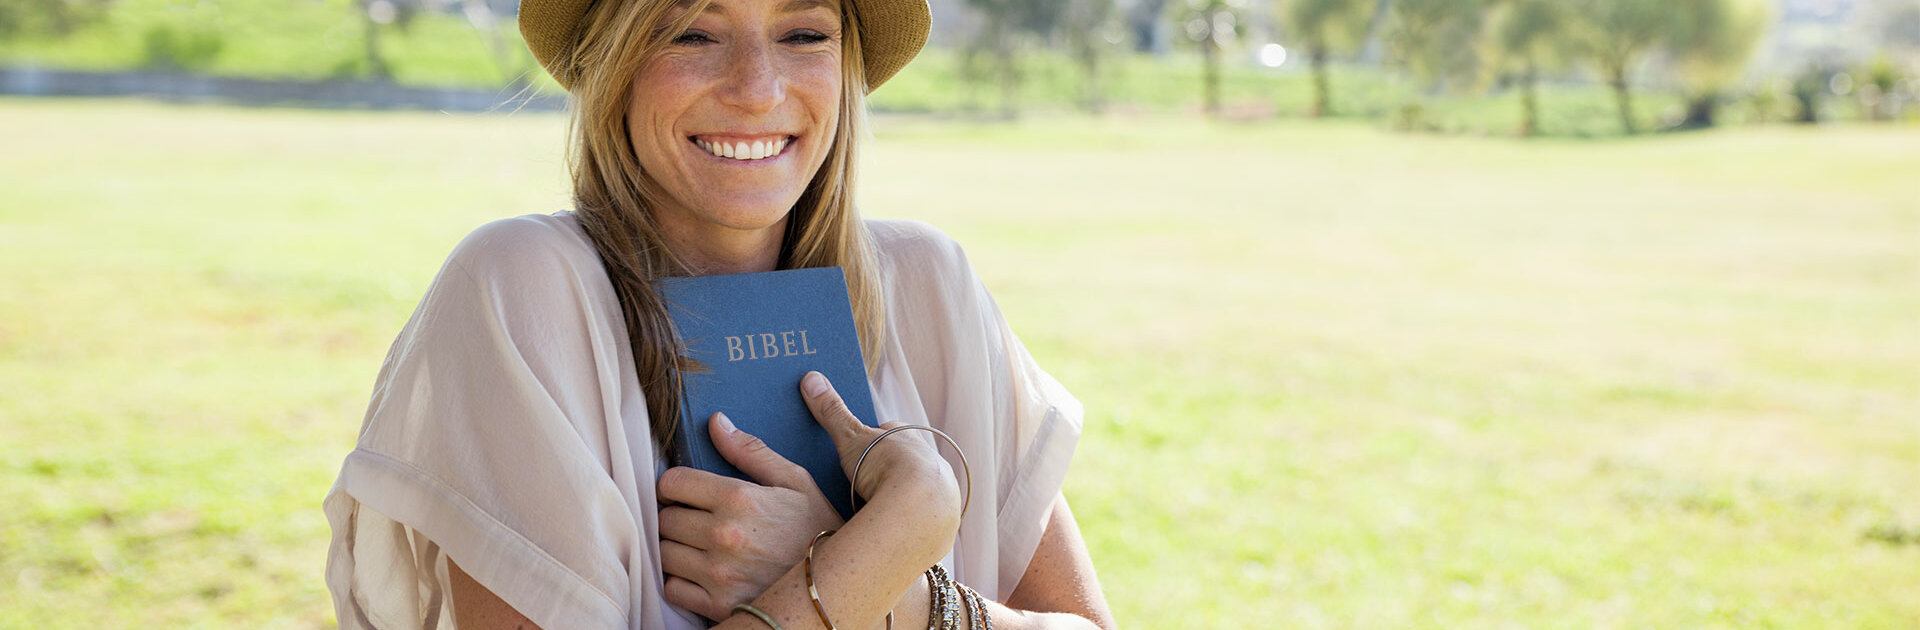 Lächelnde Frau hält Bibel in den Händen